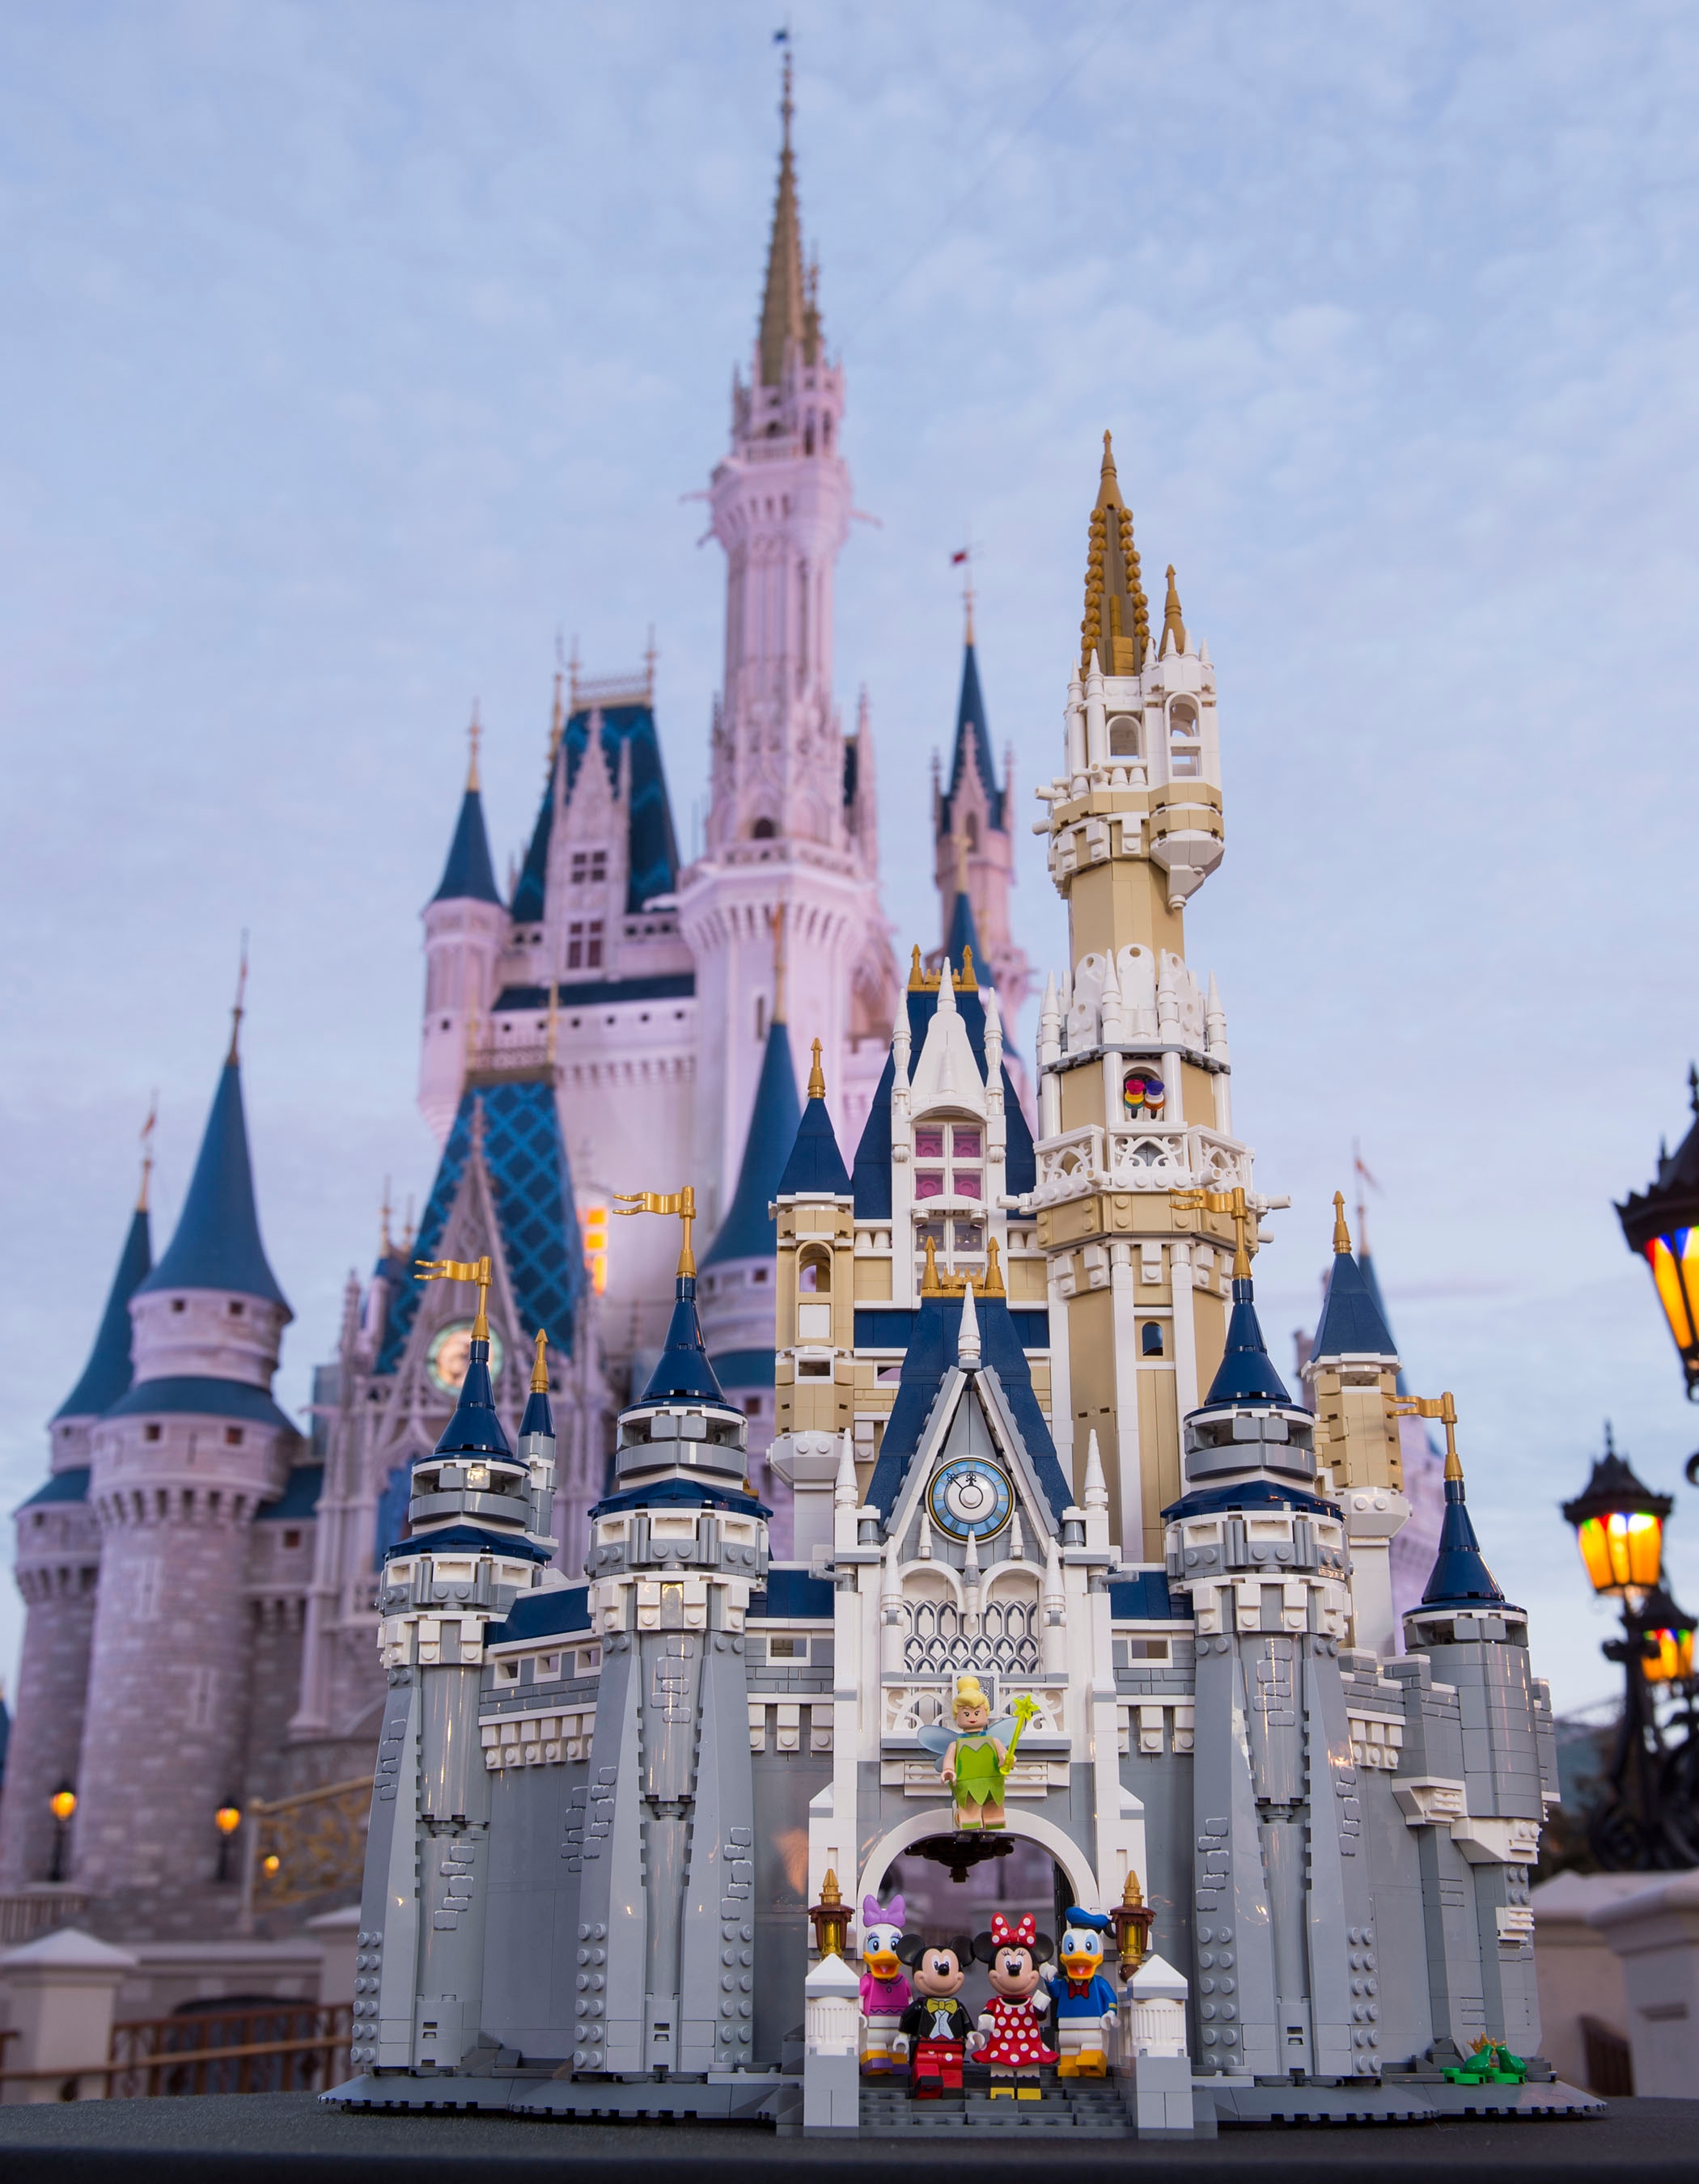 Jouet de construction - LEGO - Le château Disney - 4000 pièces